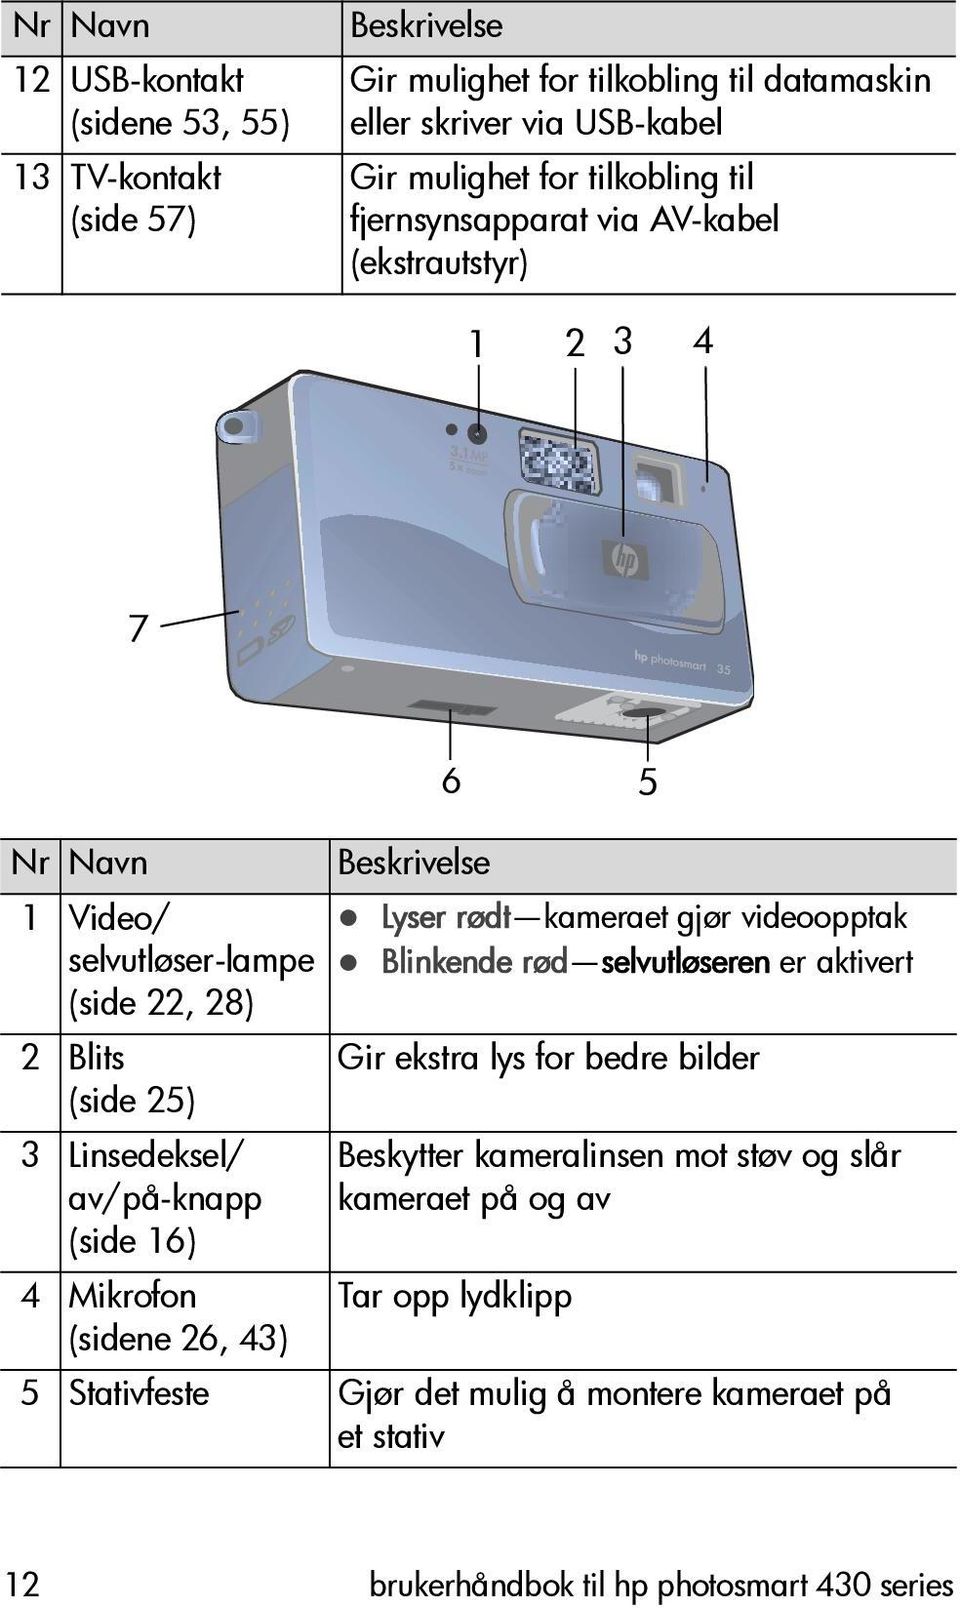 1 5x 7 6 5 Nr Navn 1 Video/ selvutløser-lampe (side 22, 28) 2 Blits (side 25) 3 Linsedeksel/ av/på-knapp (side 16) 4 Mikrofon (sidene 26, 43) Beskrivelse!